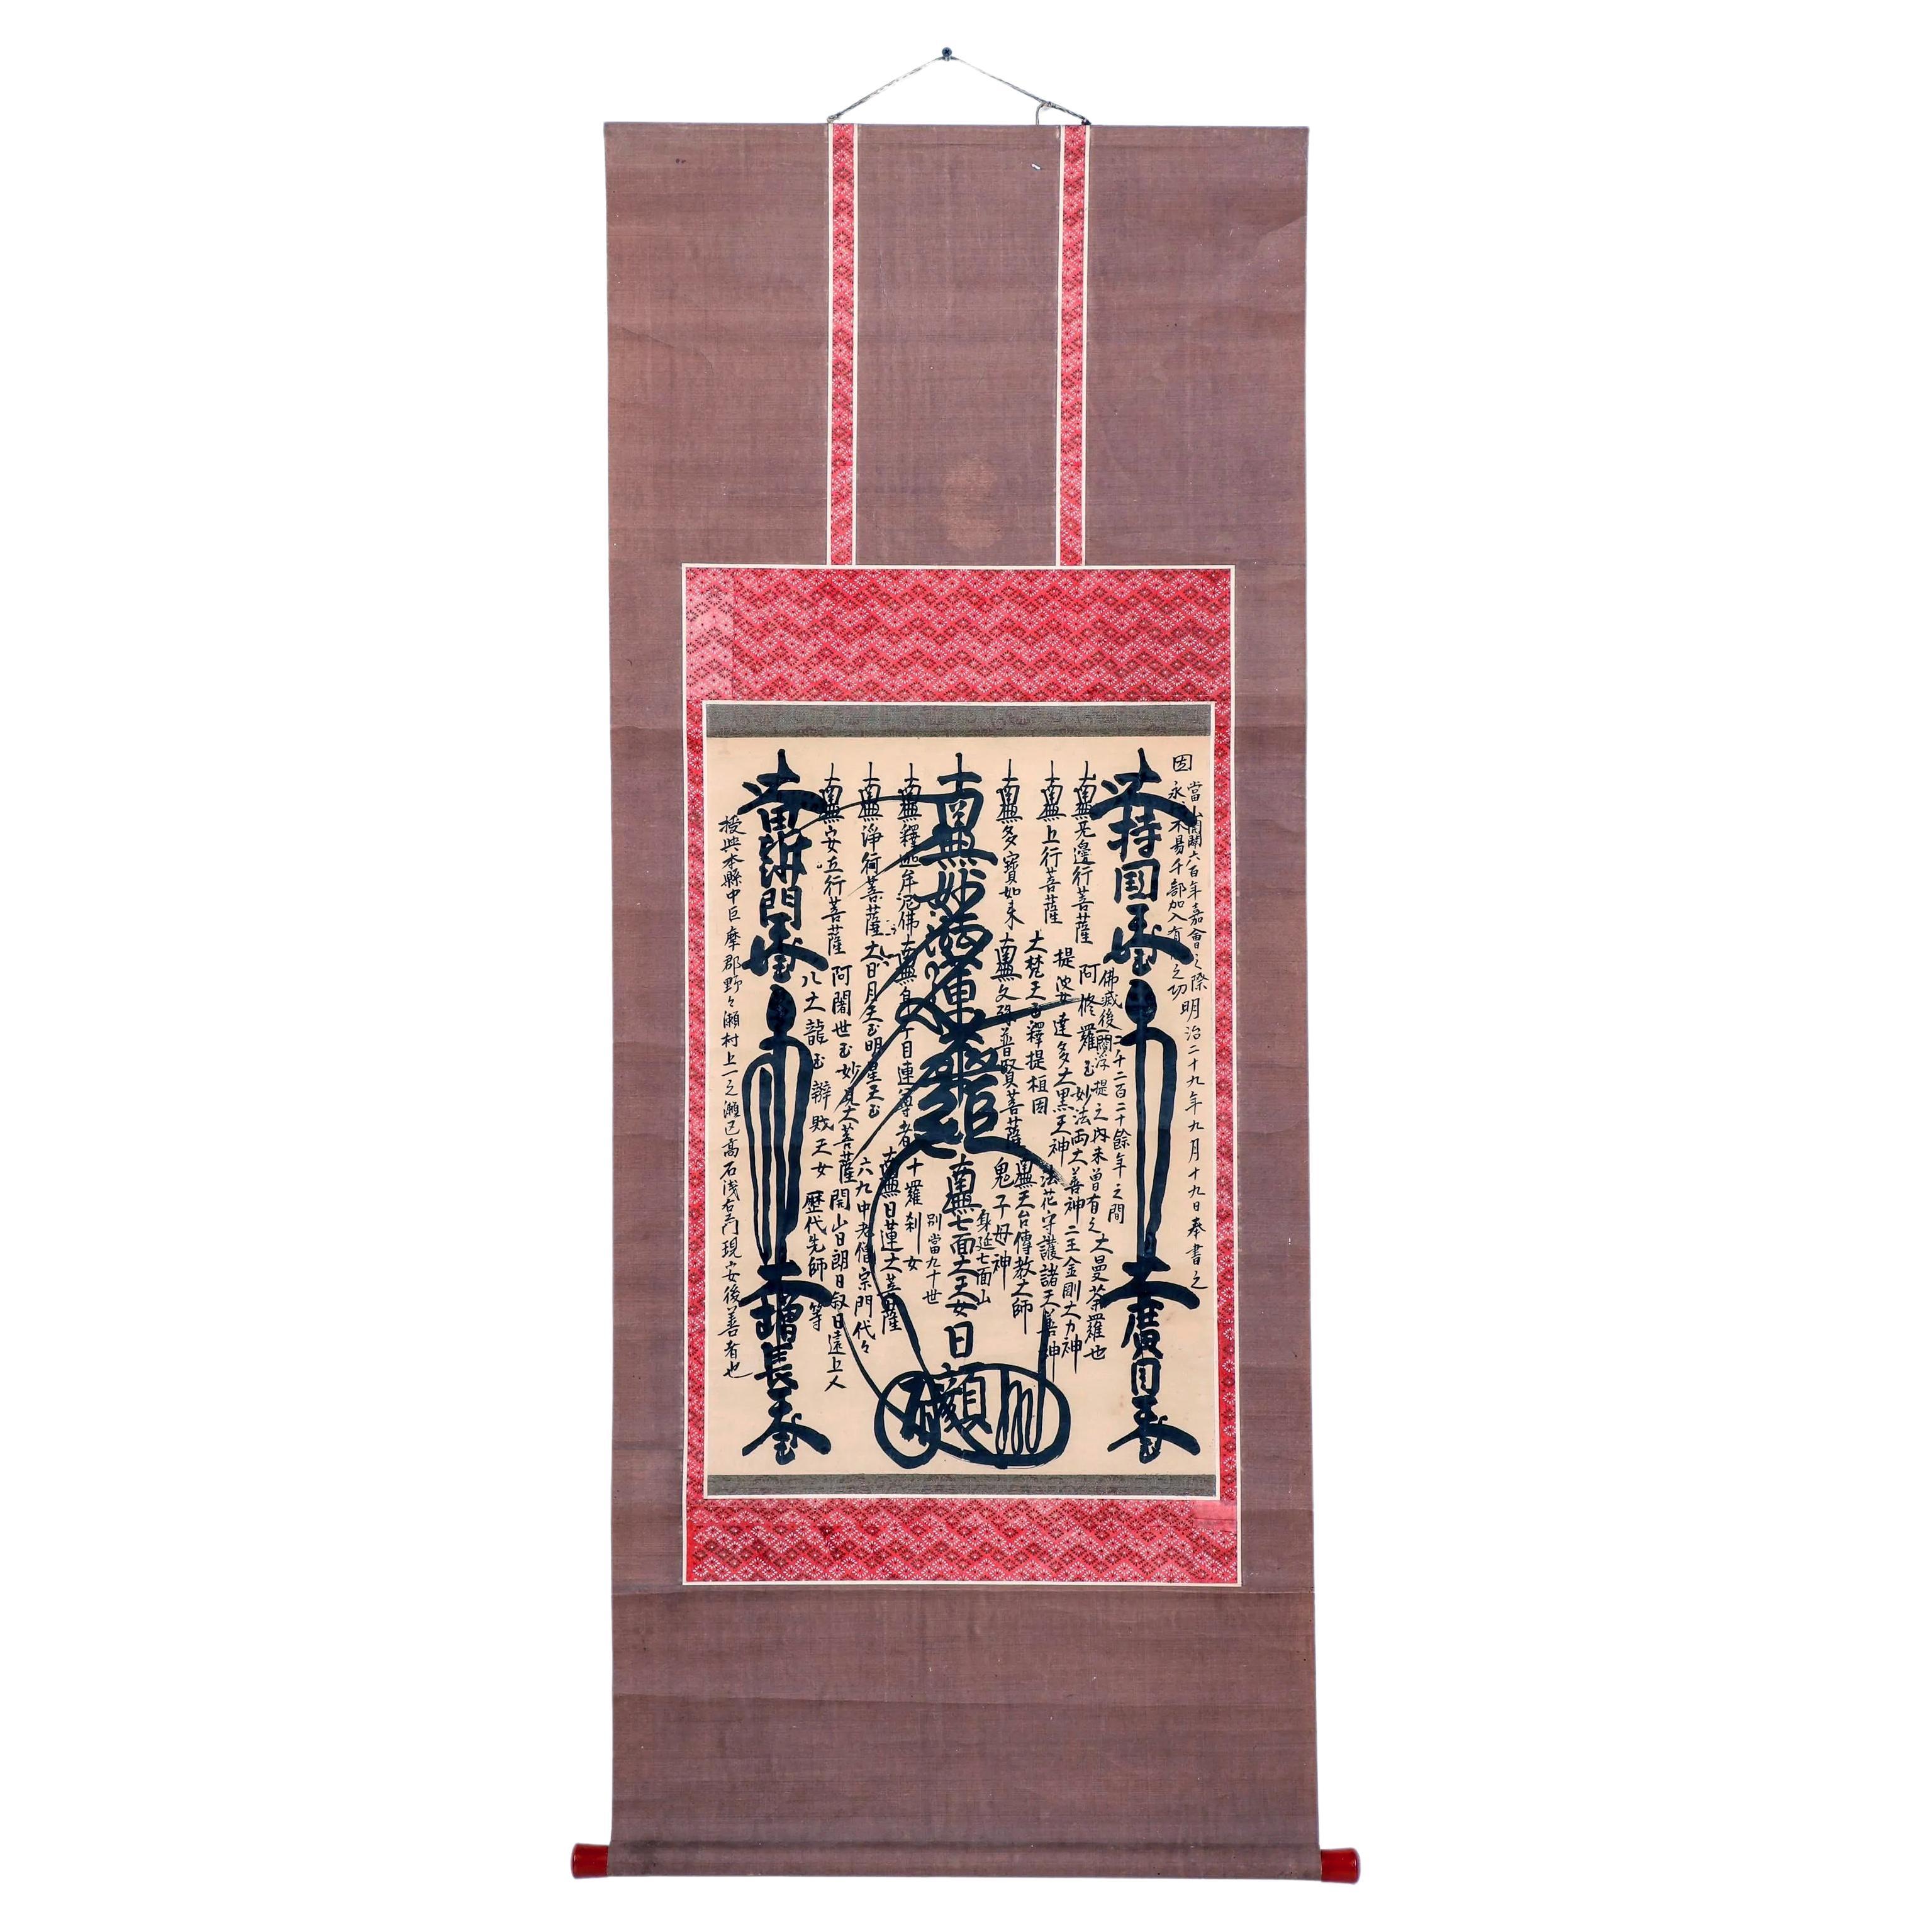 Japanische buddhistische Gohonzon- Kalligrafie Mandala-Schnörkel aus der Meiji-Periode